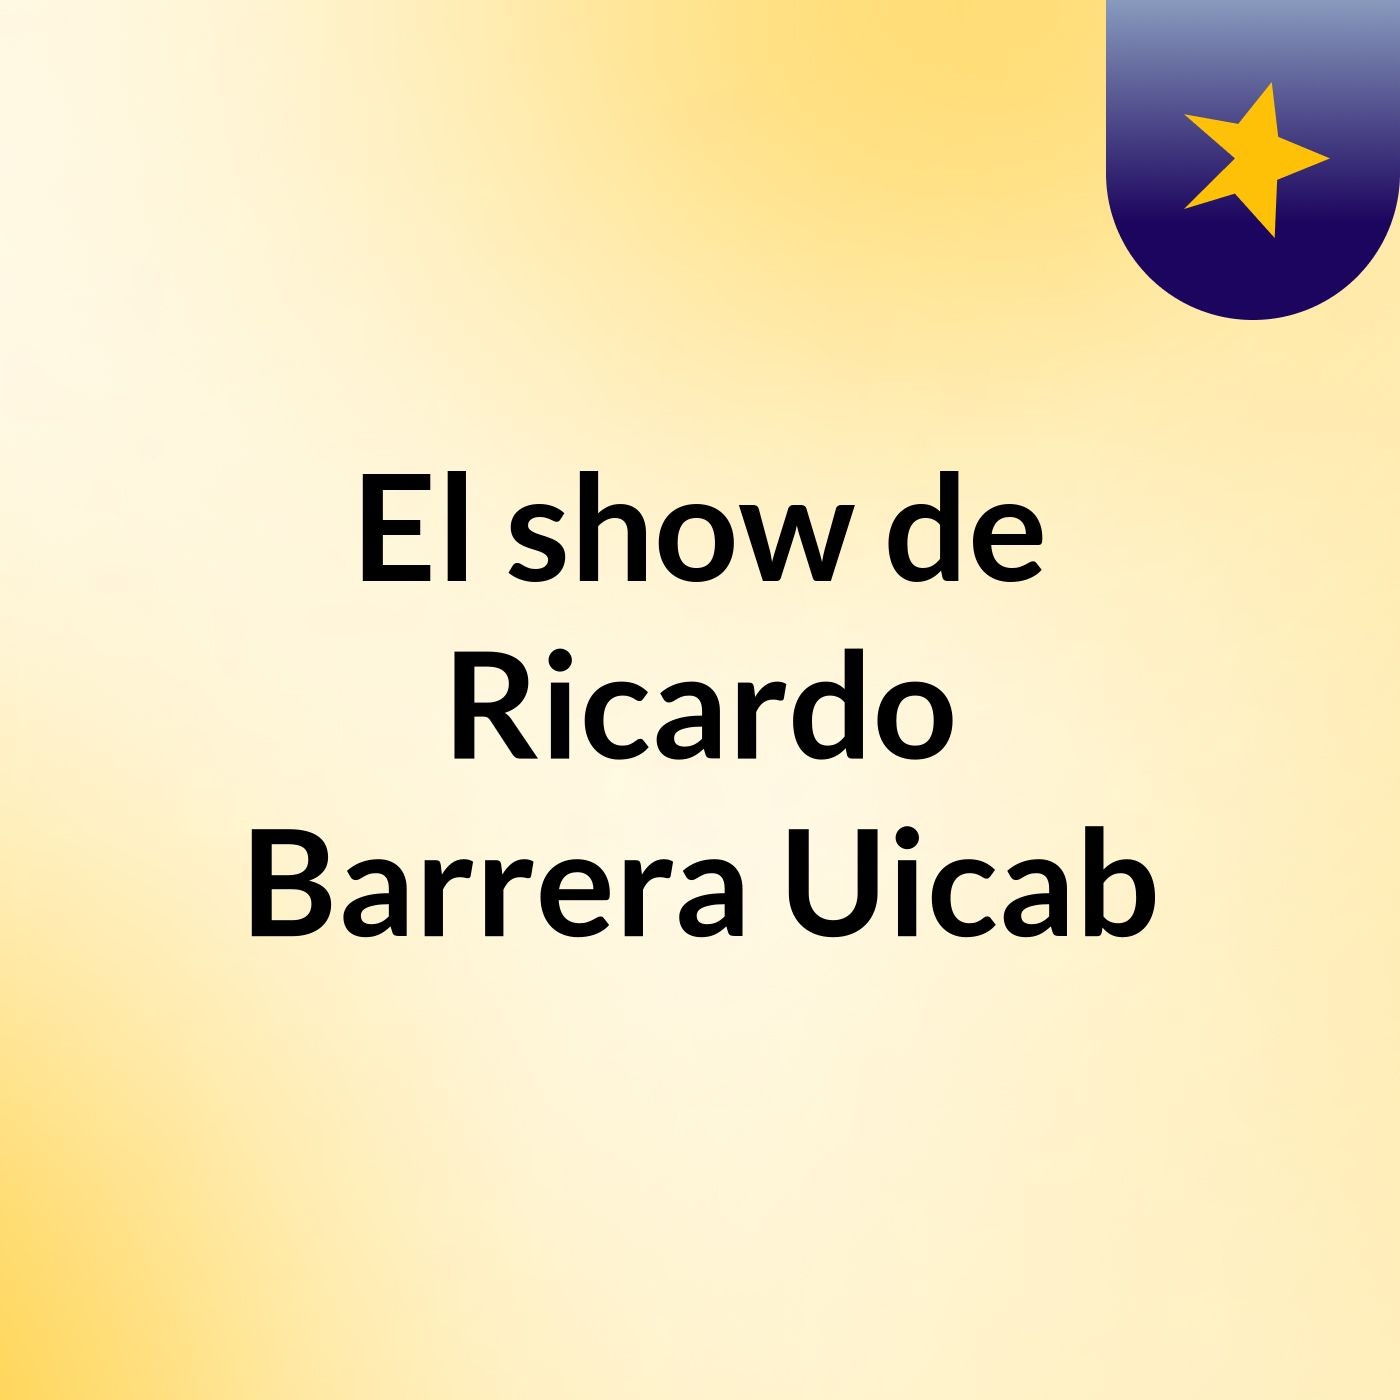 El show de Ricardo Barrera Uicab